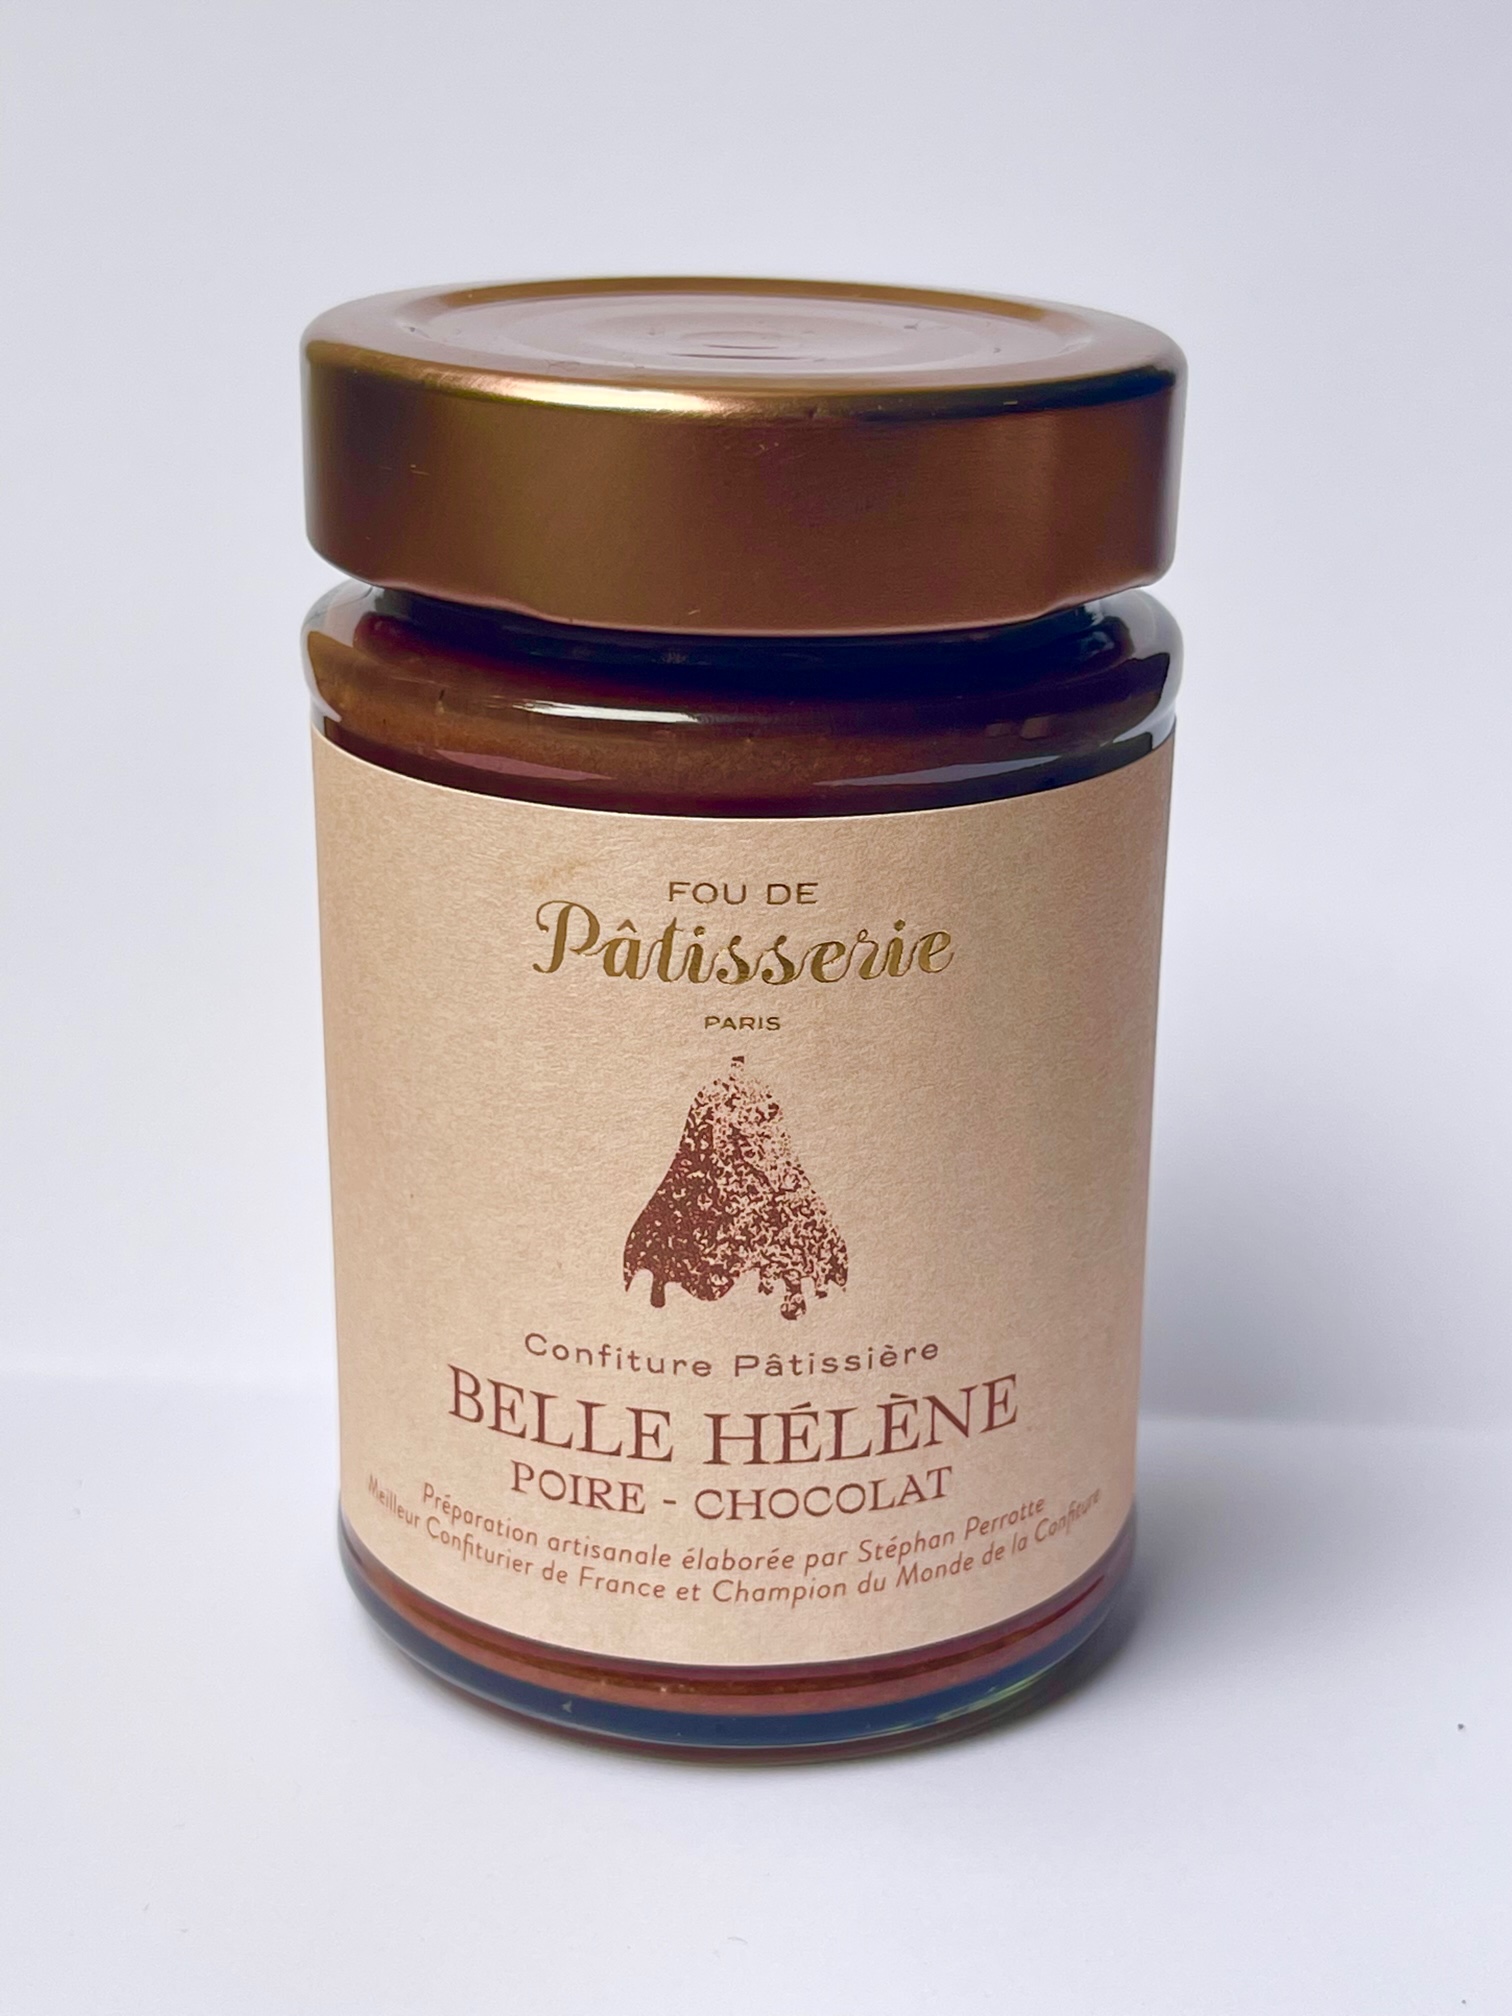 La Confiture Pâtissière "Belle Hélène"